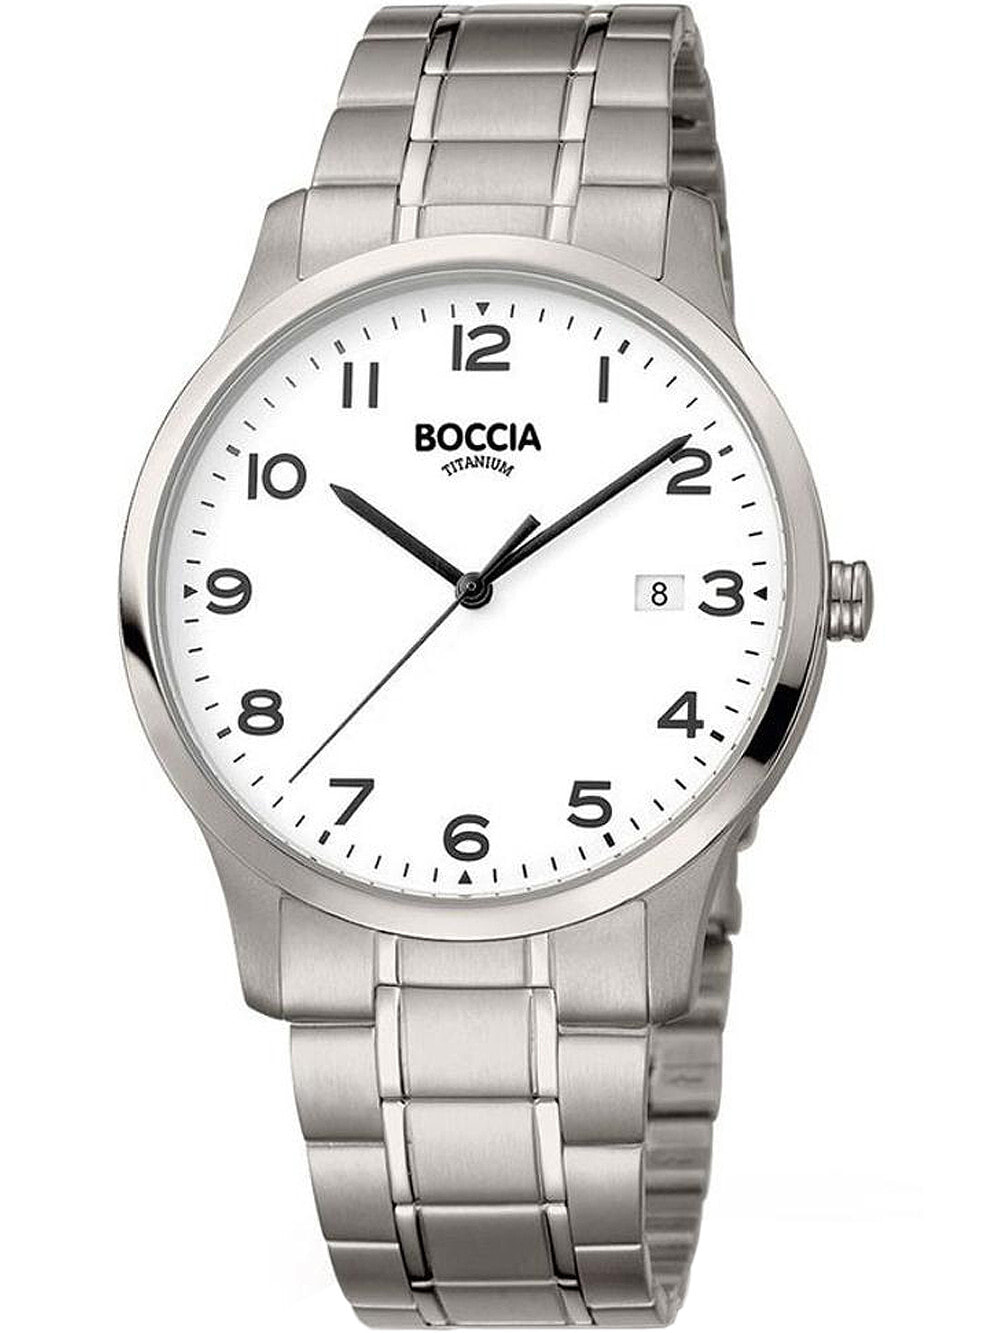 Мужские наручные часы с серебряным браслетом Boccia 3620-01 mens watch titanium 40mm 10ATM